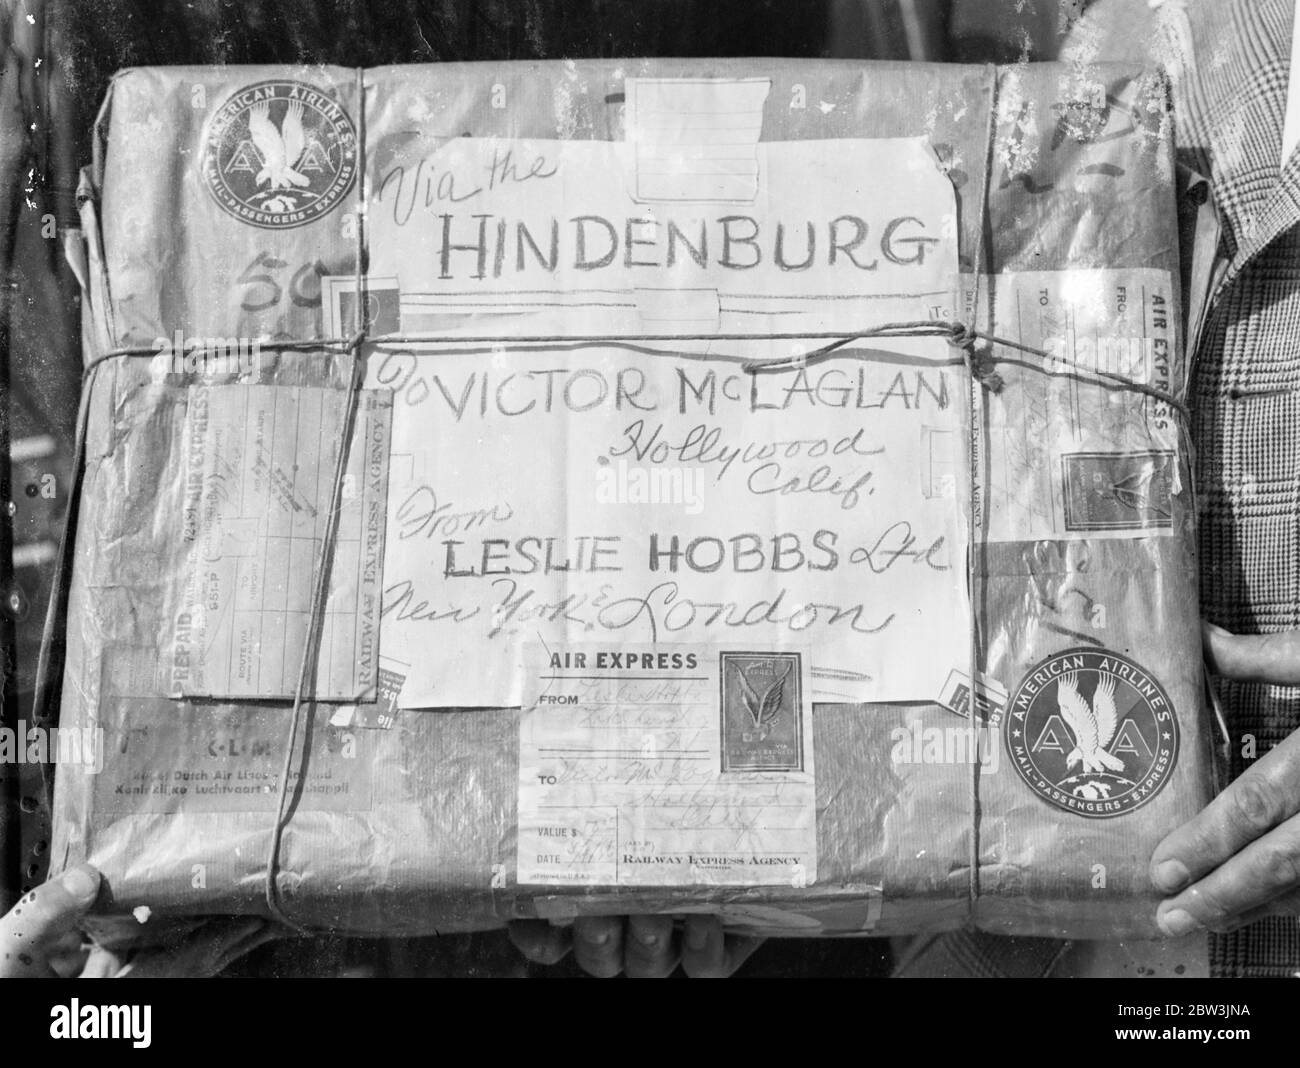 Die am meisten bereiste Jacke der Welt! . Hergestellt für Victor McLaglen  in London, nahm Luftschiff Hindenburg es über den Atlantik. Innerhalb von  vier Tagen nach dem letzten Stich in einen in